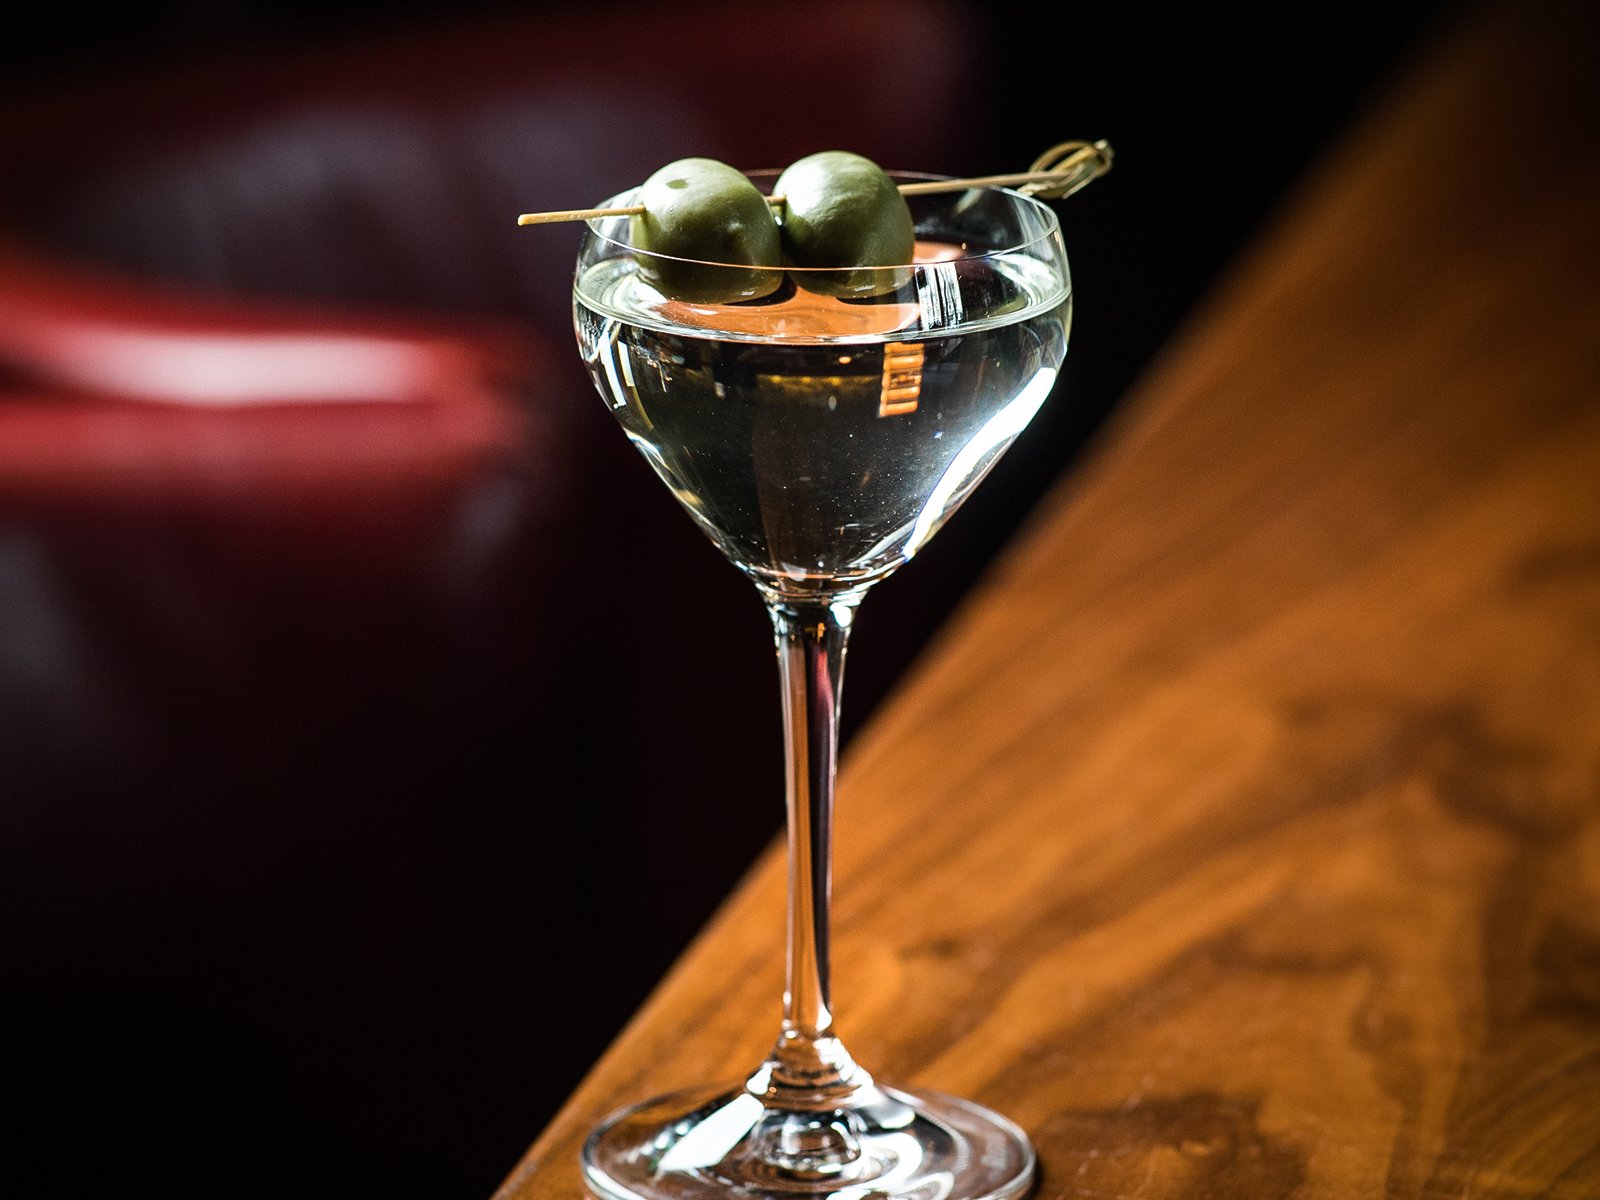 James-Bond-Cocktails: Der trockene Martini